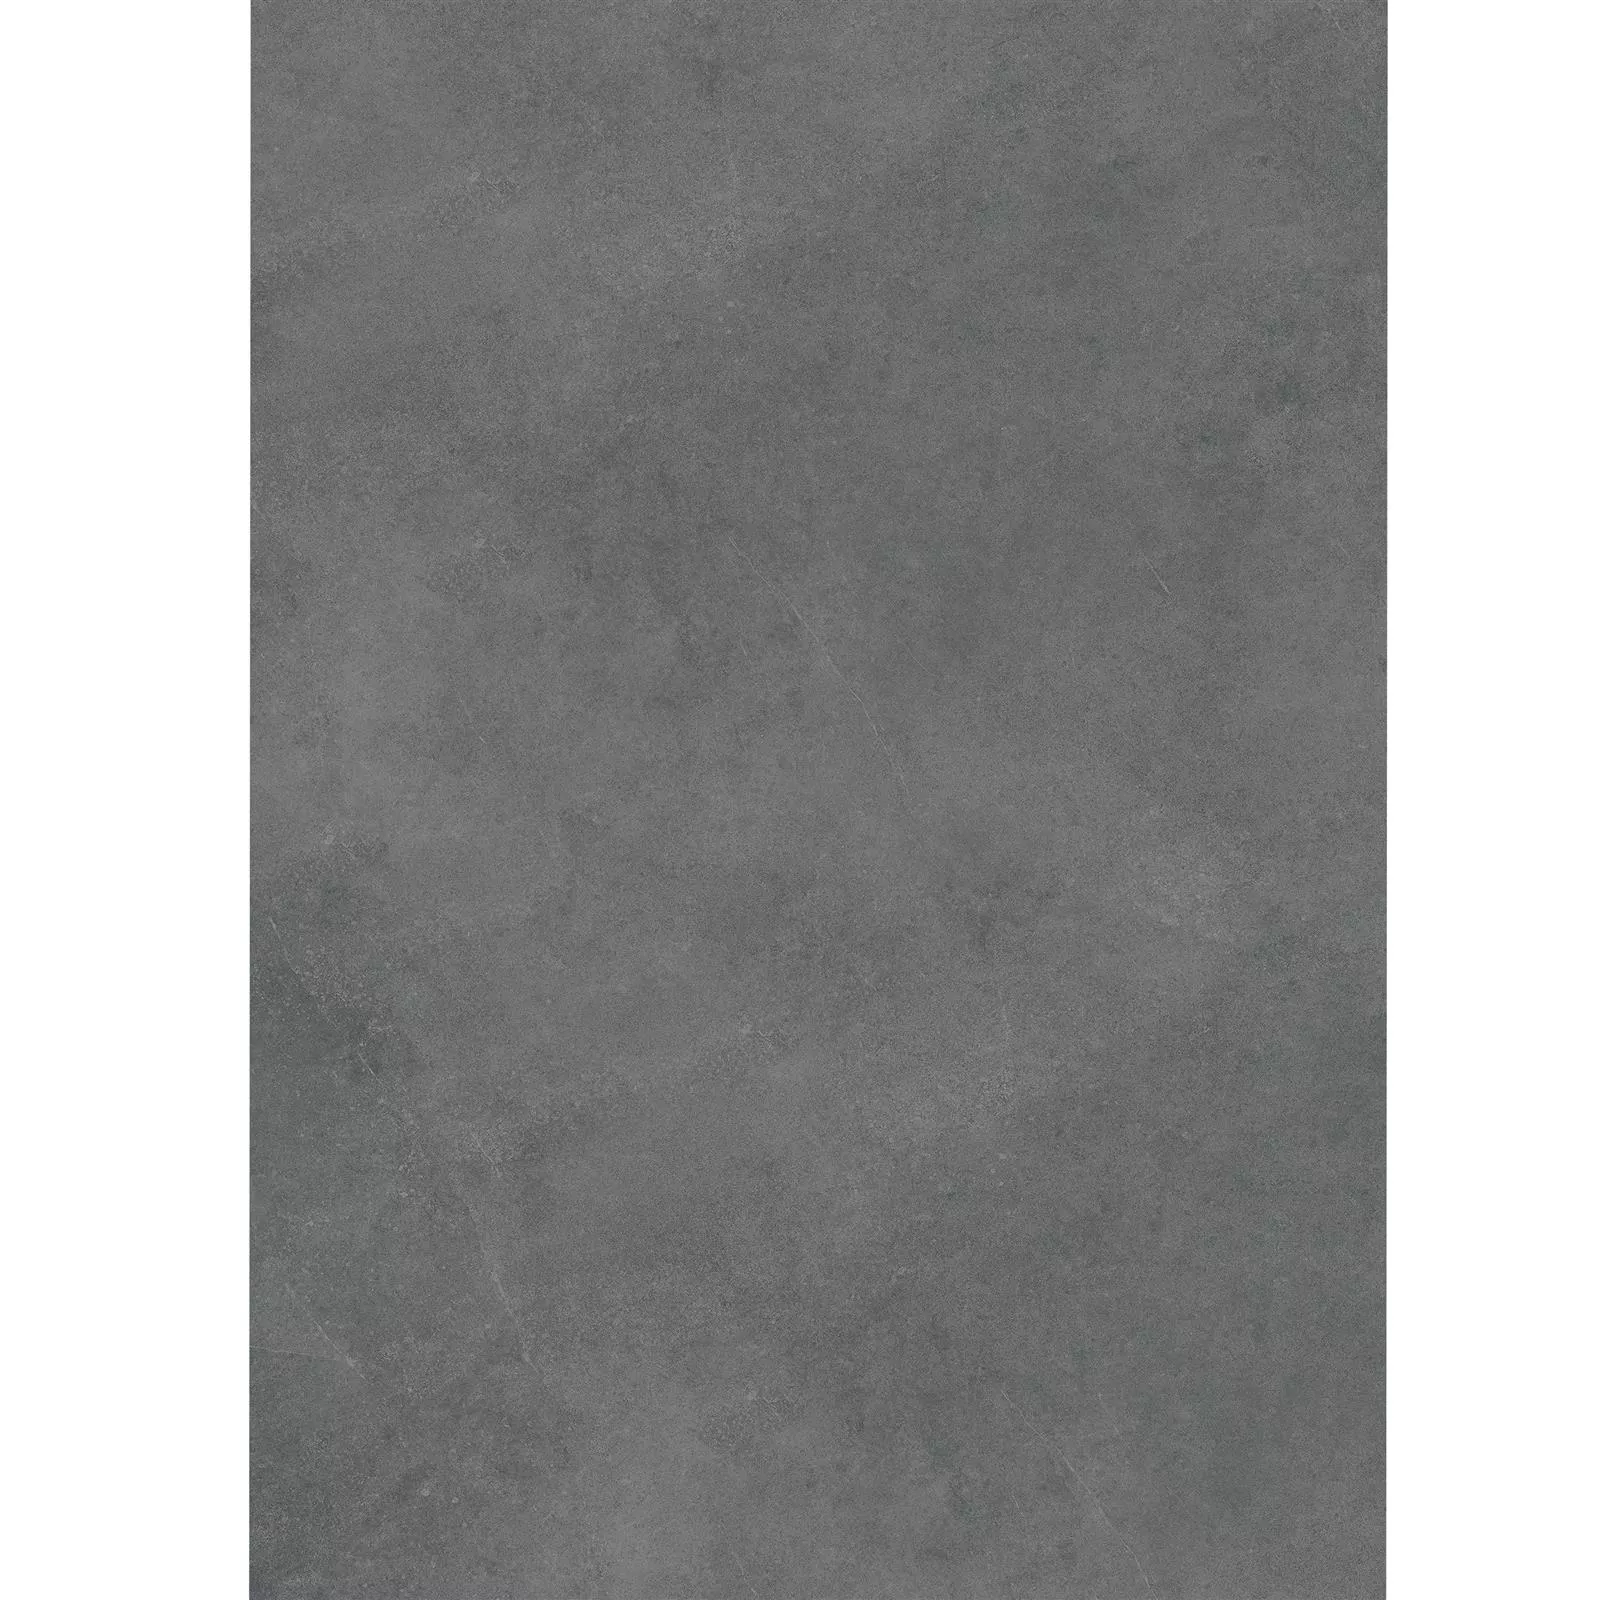 Teraszlapok Cement Megjelenés Glinde Antracit 60x120cm